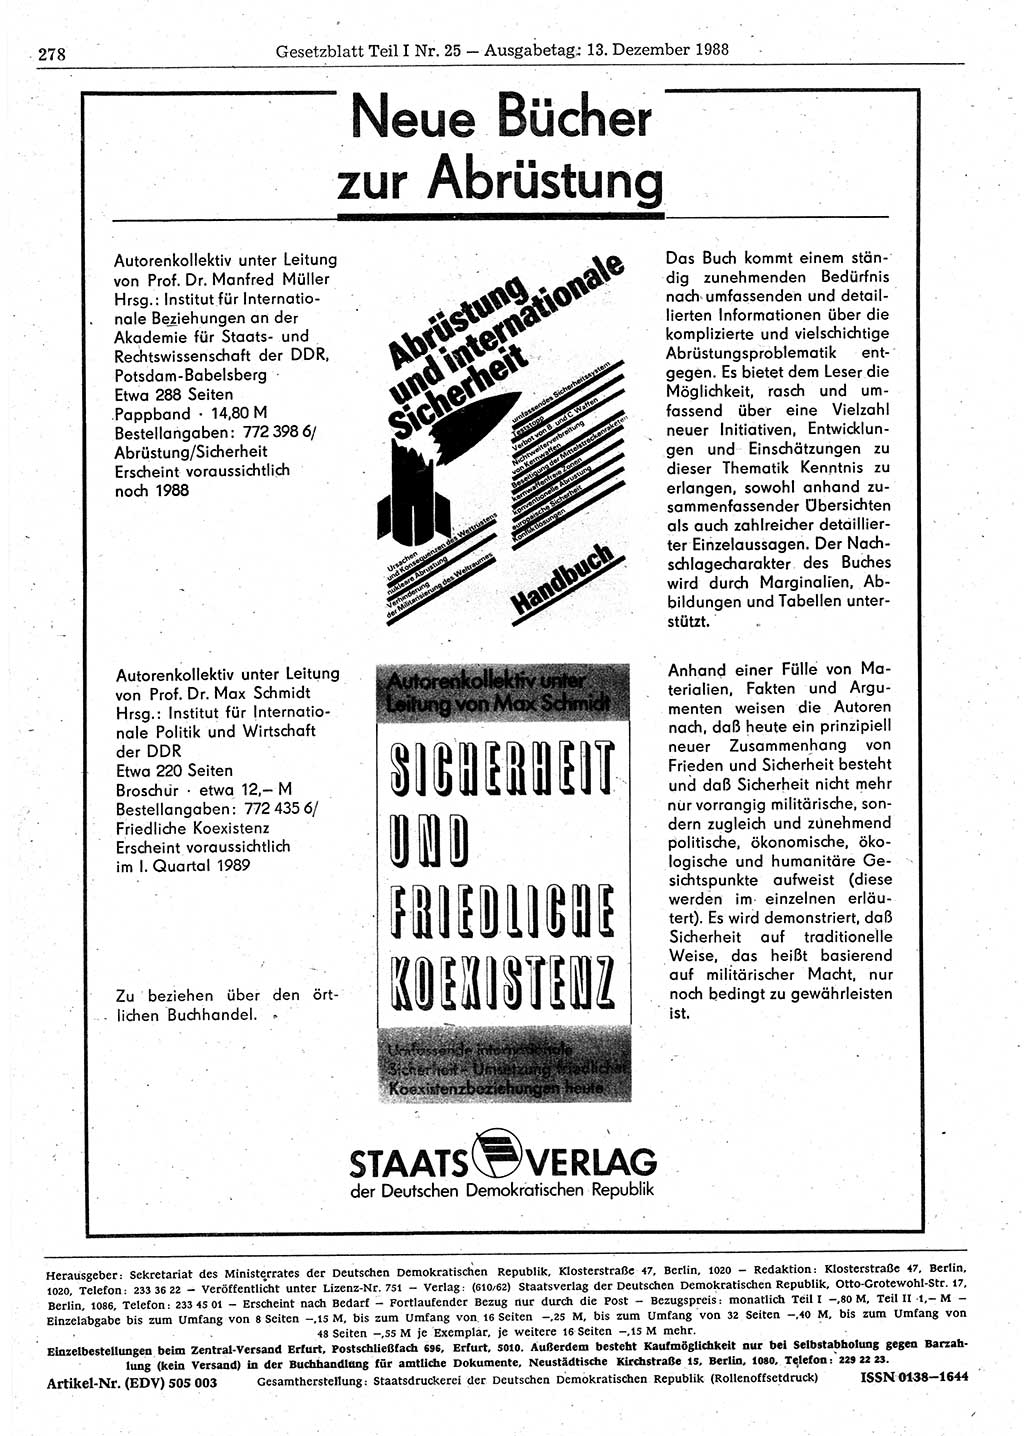 Gesetzblatt (GBl.) der Deutschen Demokratischen Republik (DDR) Teil Ⅰ 1988, Seite 278 (GBl. DDR Ⅰ 1988, S. 278)